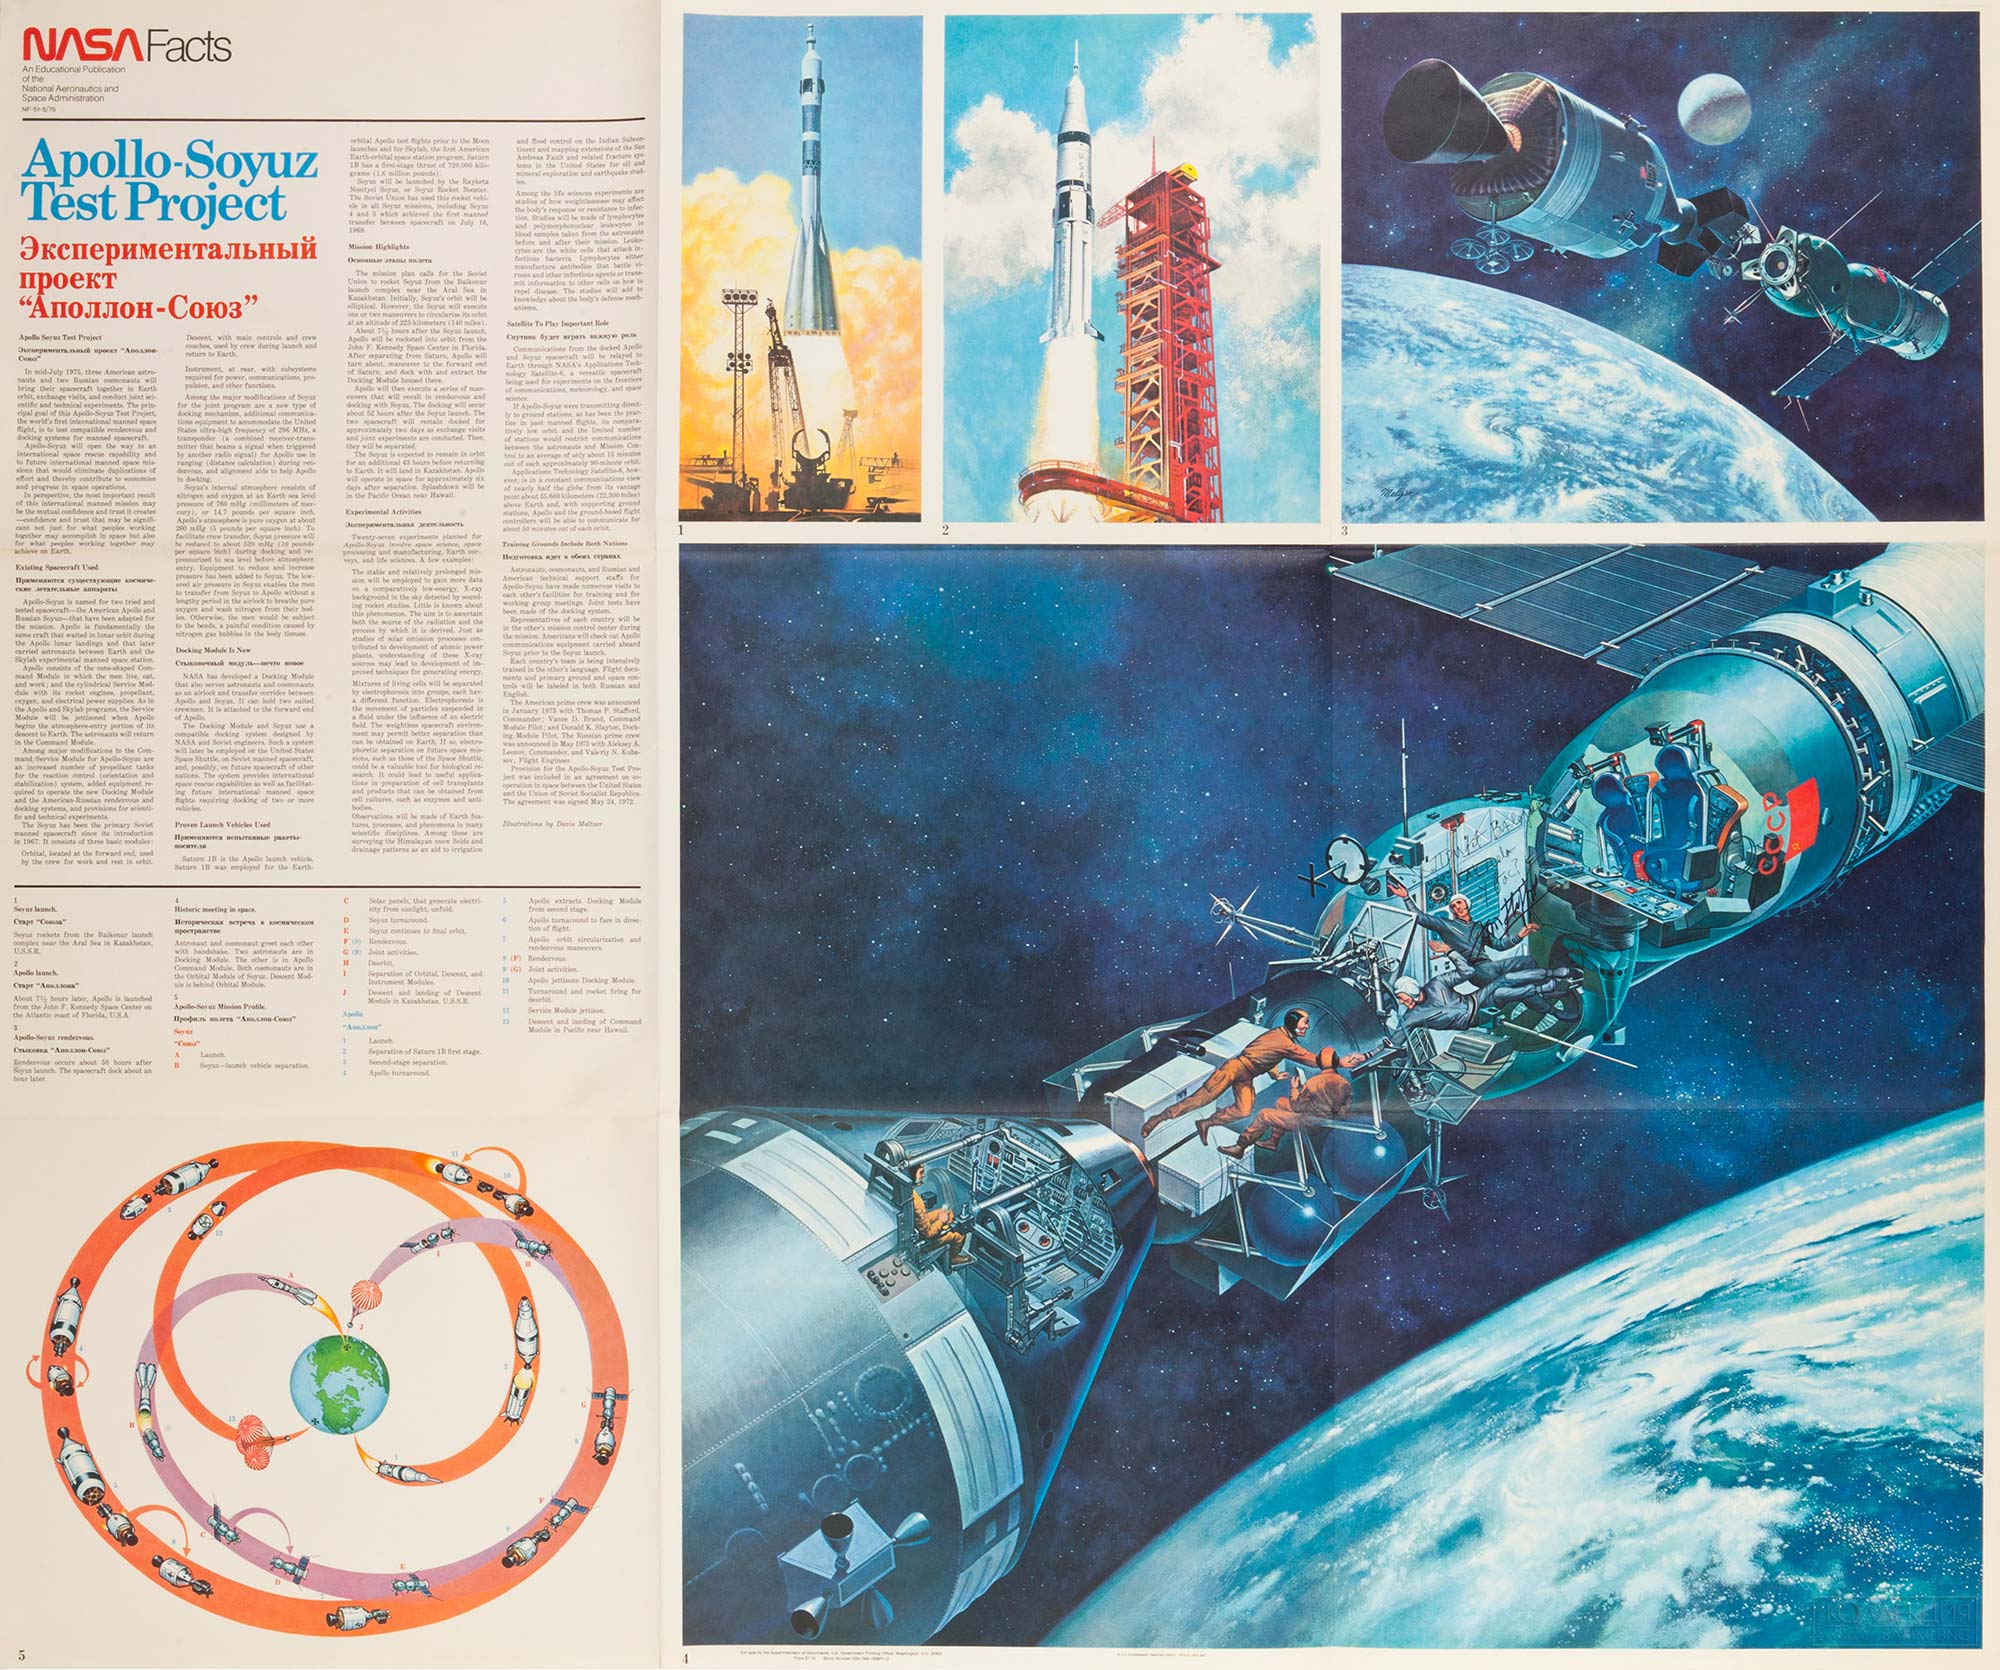 Картины Мельцера, иллюстрирующие информационный плакат НАСА. Apollo-Soyuz Test Project. Washington, DC: GPO for Nasa Facts, 1975. Источник: lotsearch.net